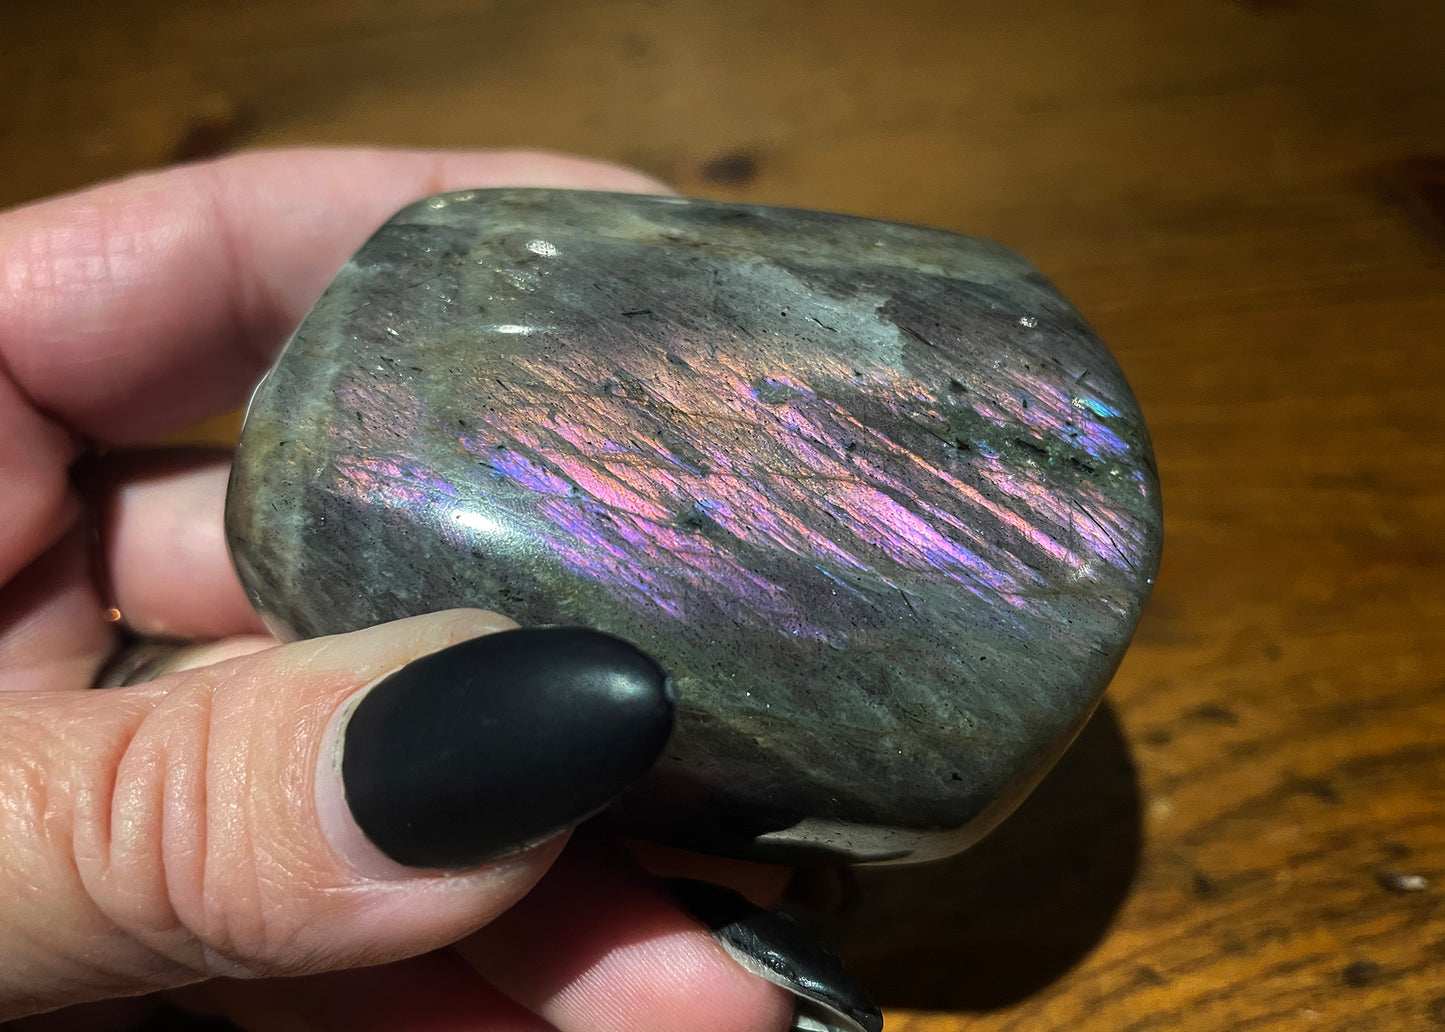 Purple Labradorite - Freeform - 220 grams